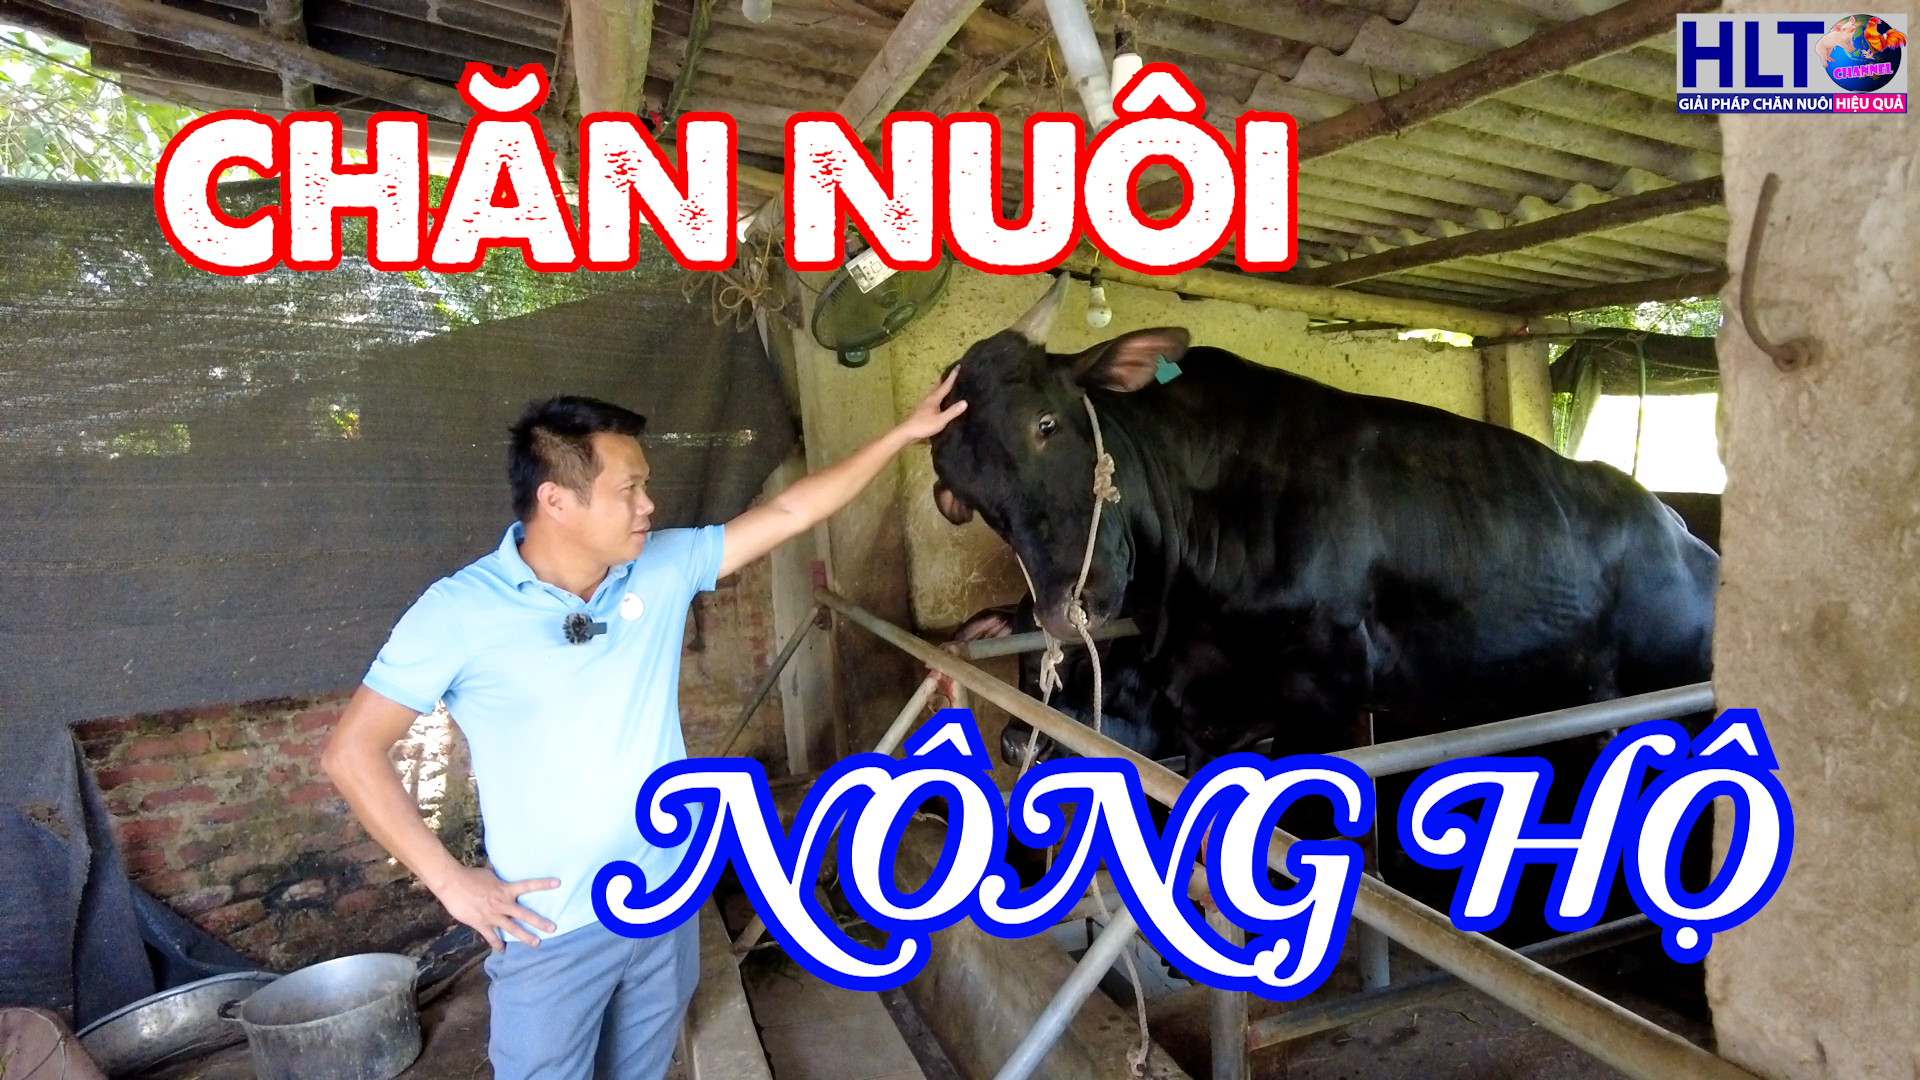 Xuân Lộc  Thủ phủ mới của chăn nuôi công nghiệp ở Đồng Nai  CHĂN NUÔI  VIỆT NAM